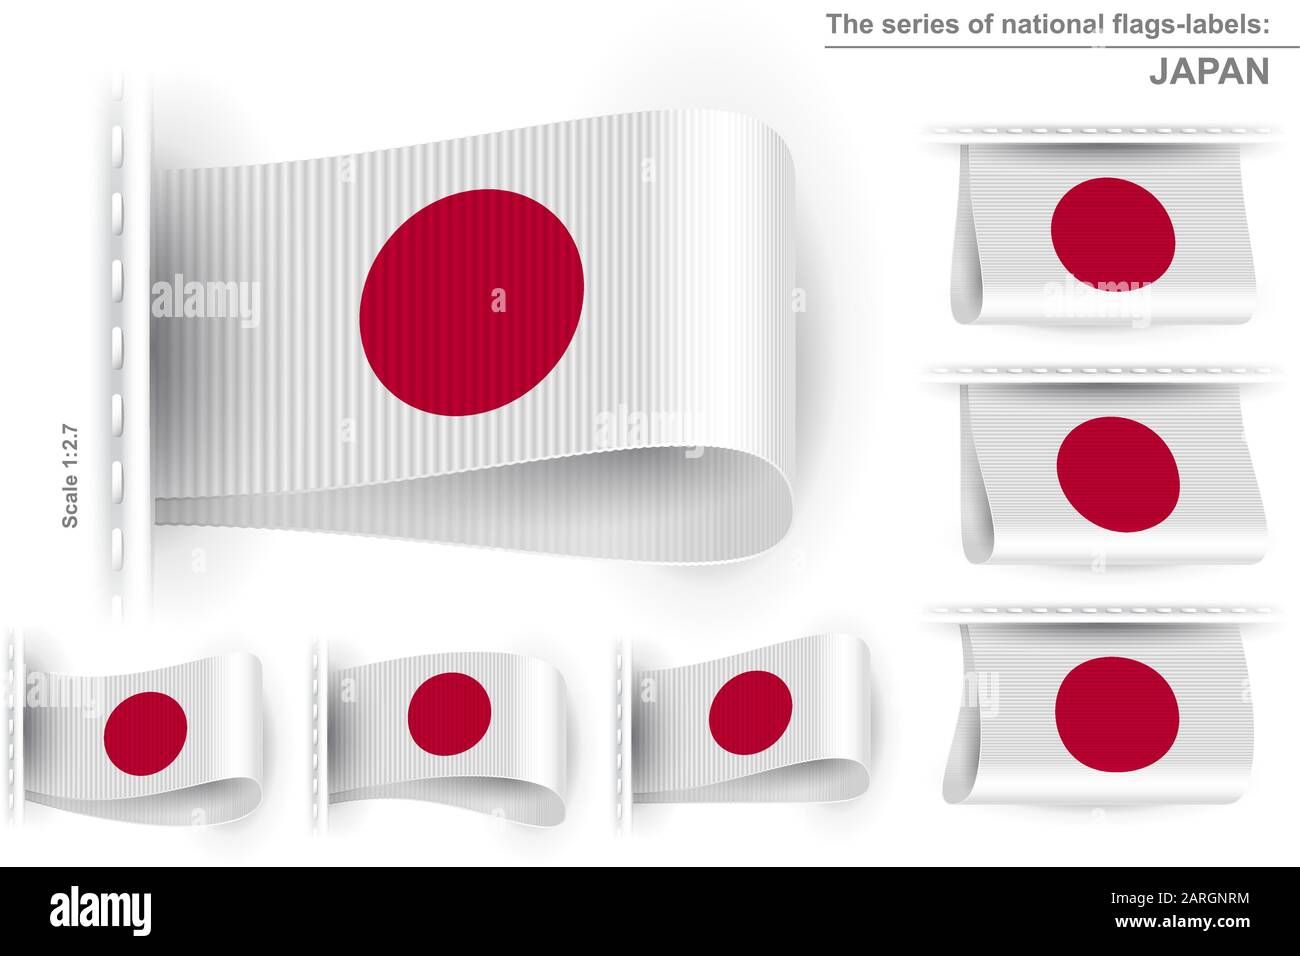 Bandiera del Giappone; simbolo dell'orgoglio patriottico nazionale giapponese e del potere politico; etichetta di abbigliamento Cucita dalla bandiera di stato di Nippon-koku Nihon-koku; Illustrazione Vettoriale